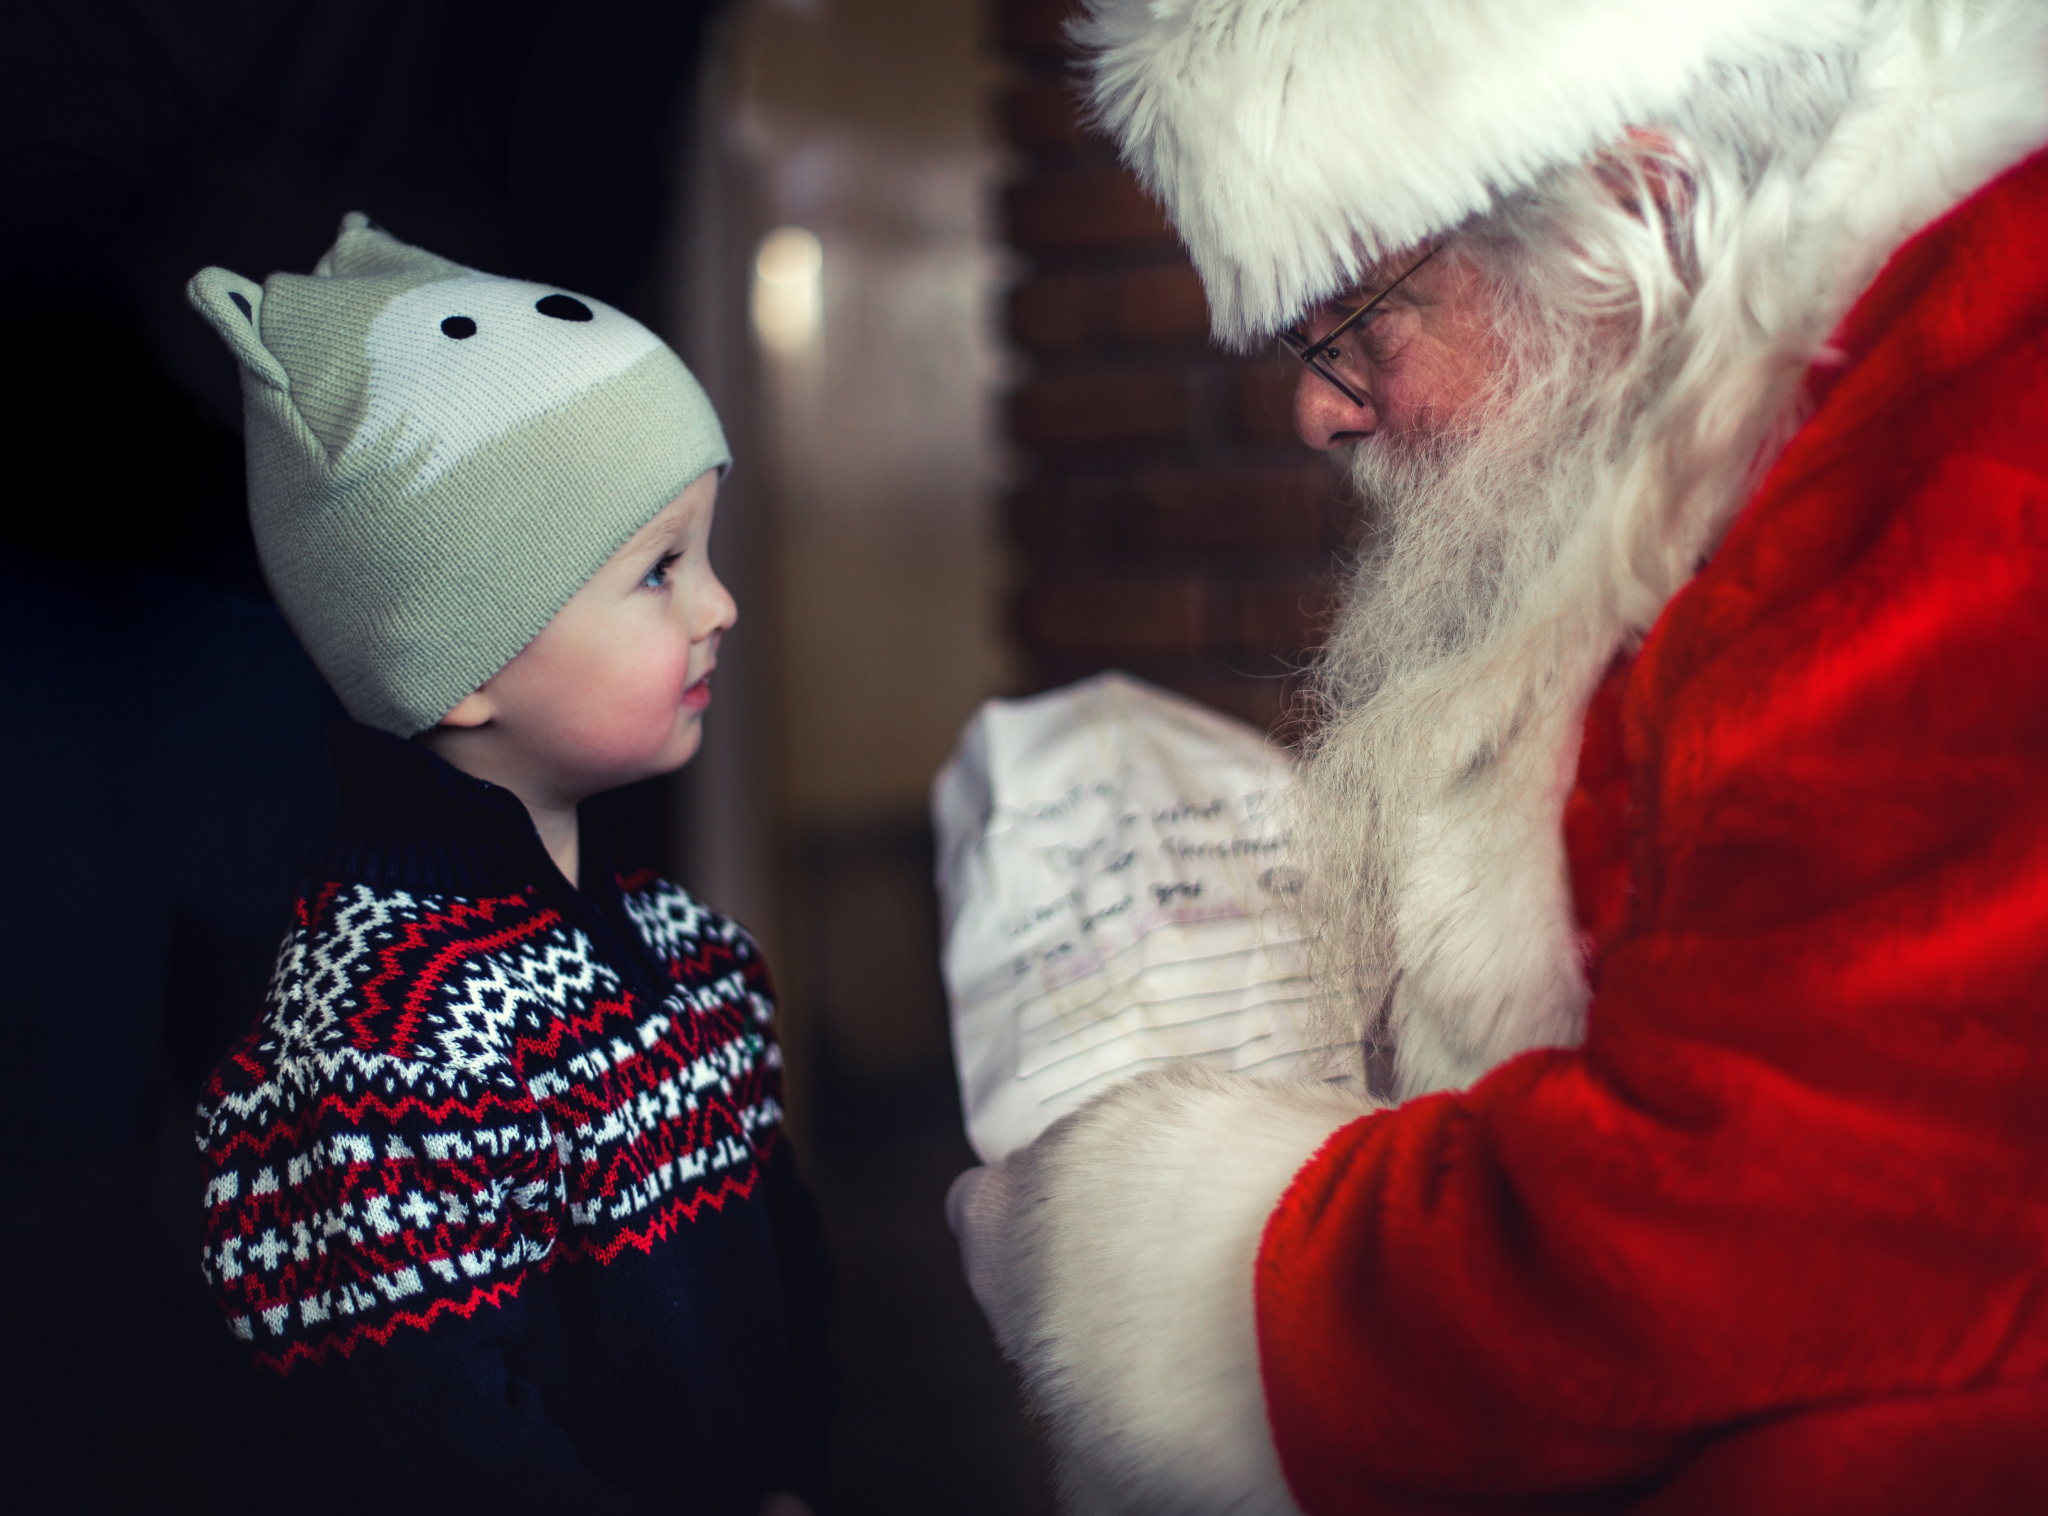 В декабре в Саранске будет работать «Фабрика Деда Мороза»